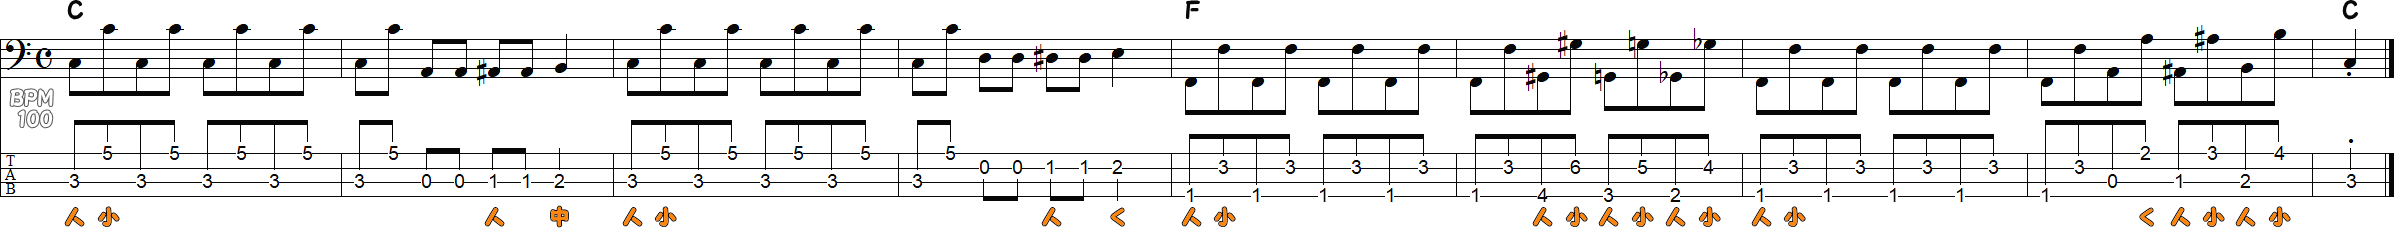 オクターブ奏法の練習ベースライン8小節